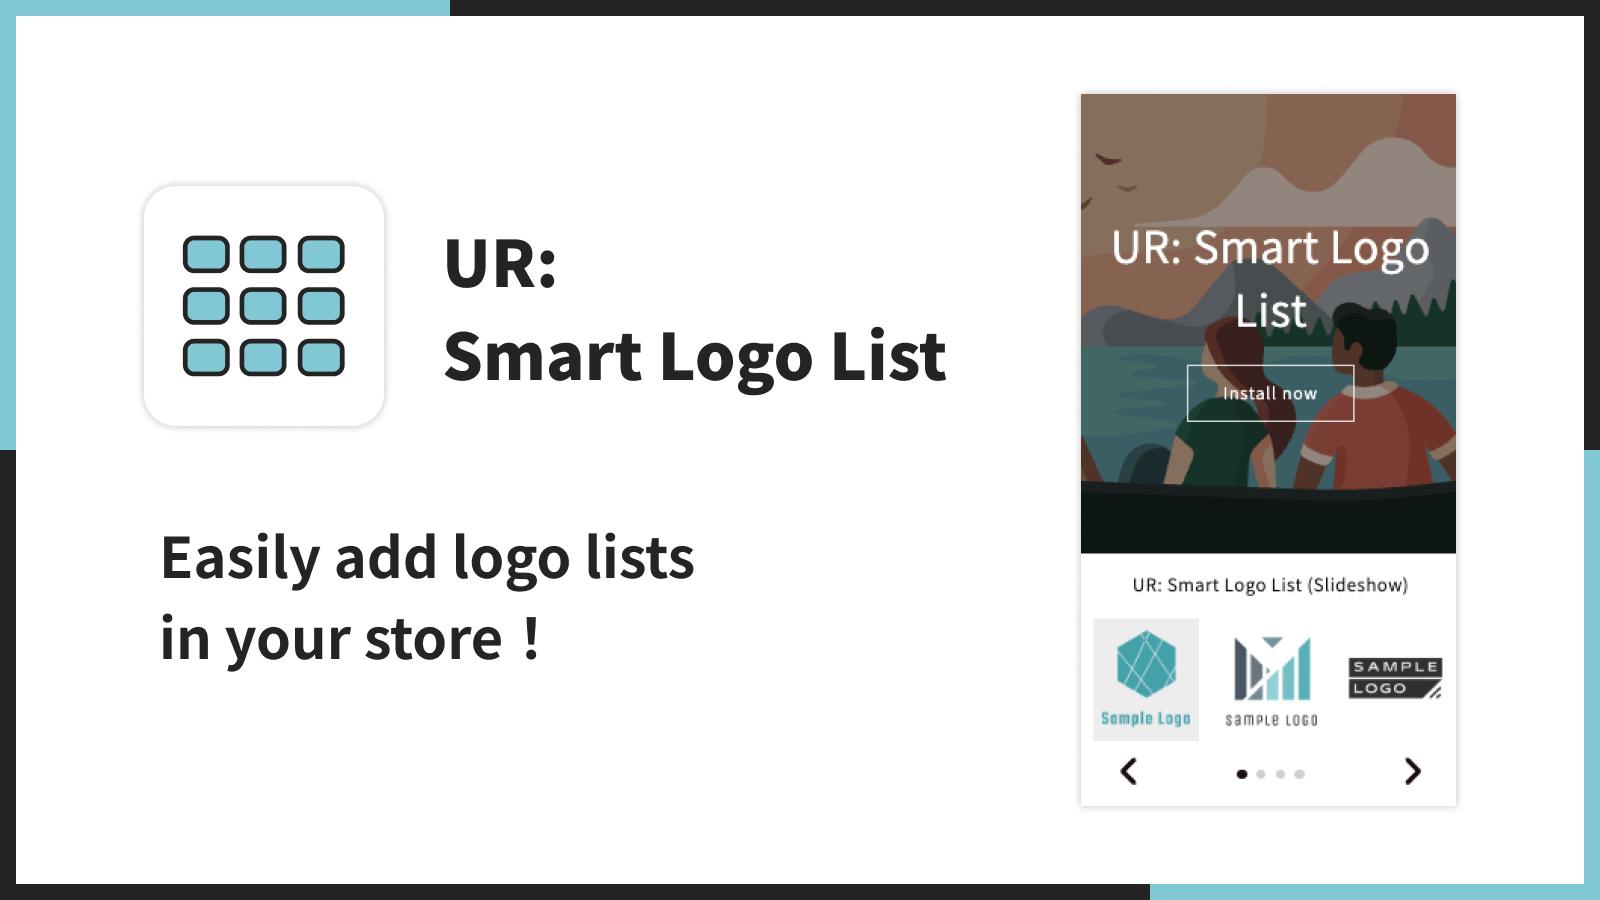 UR: Smart Logo List | Voeg eenvoudig logo lijsten toe in uw winkel！